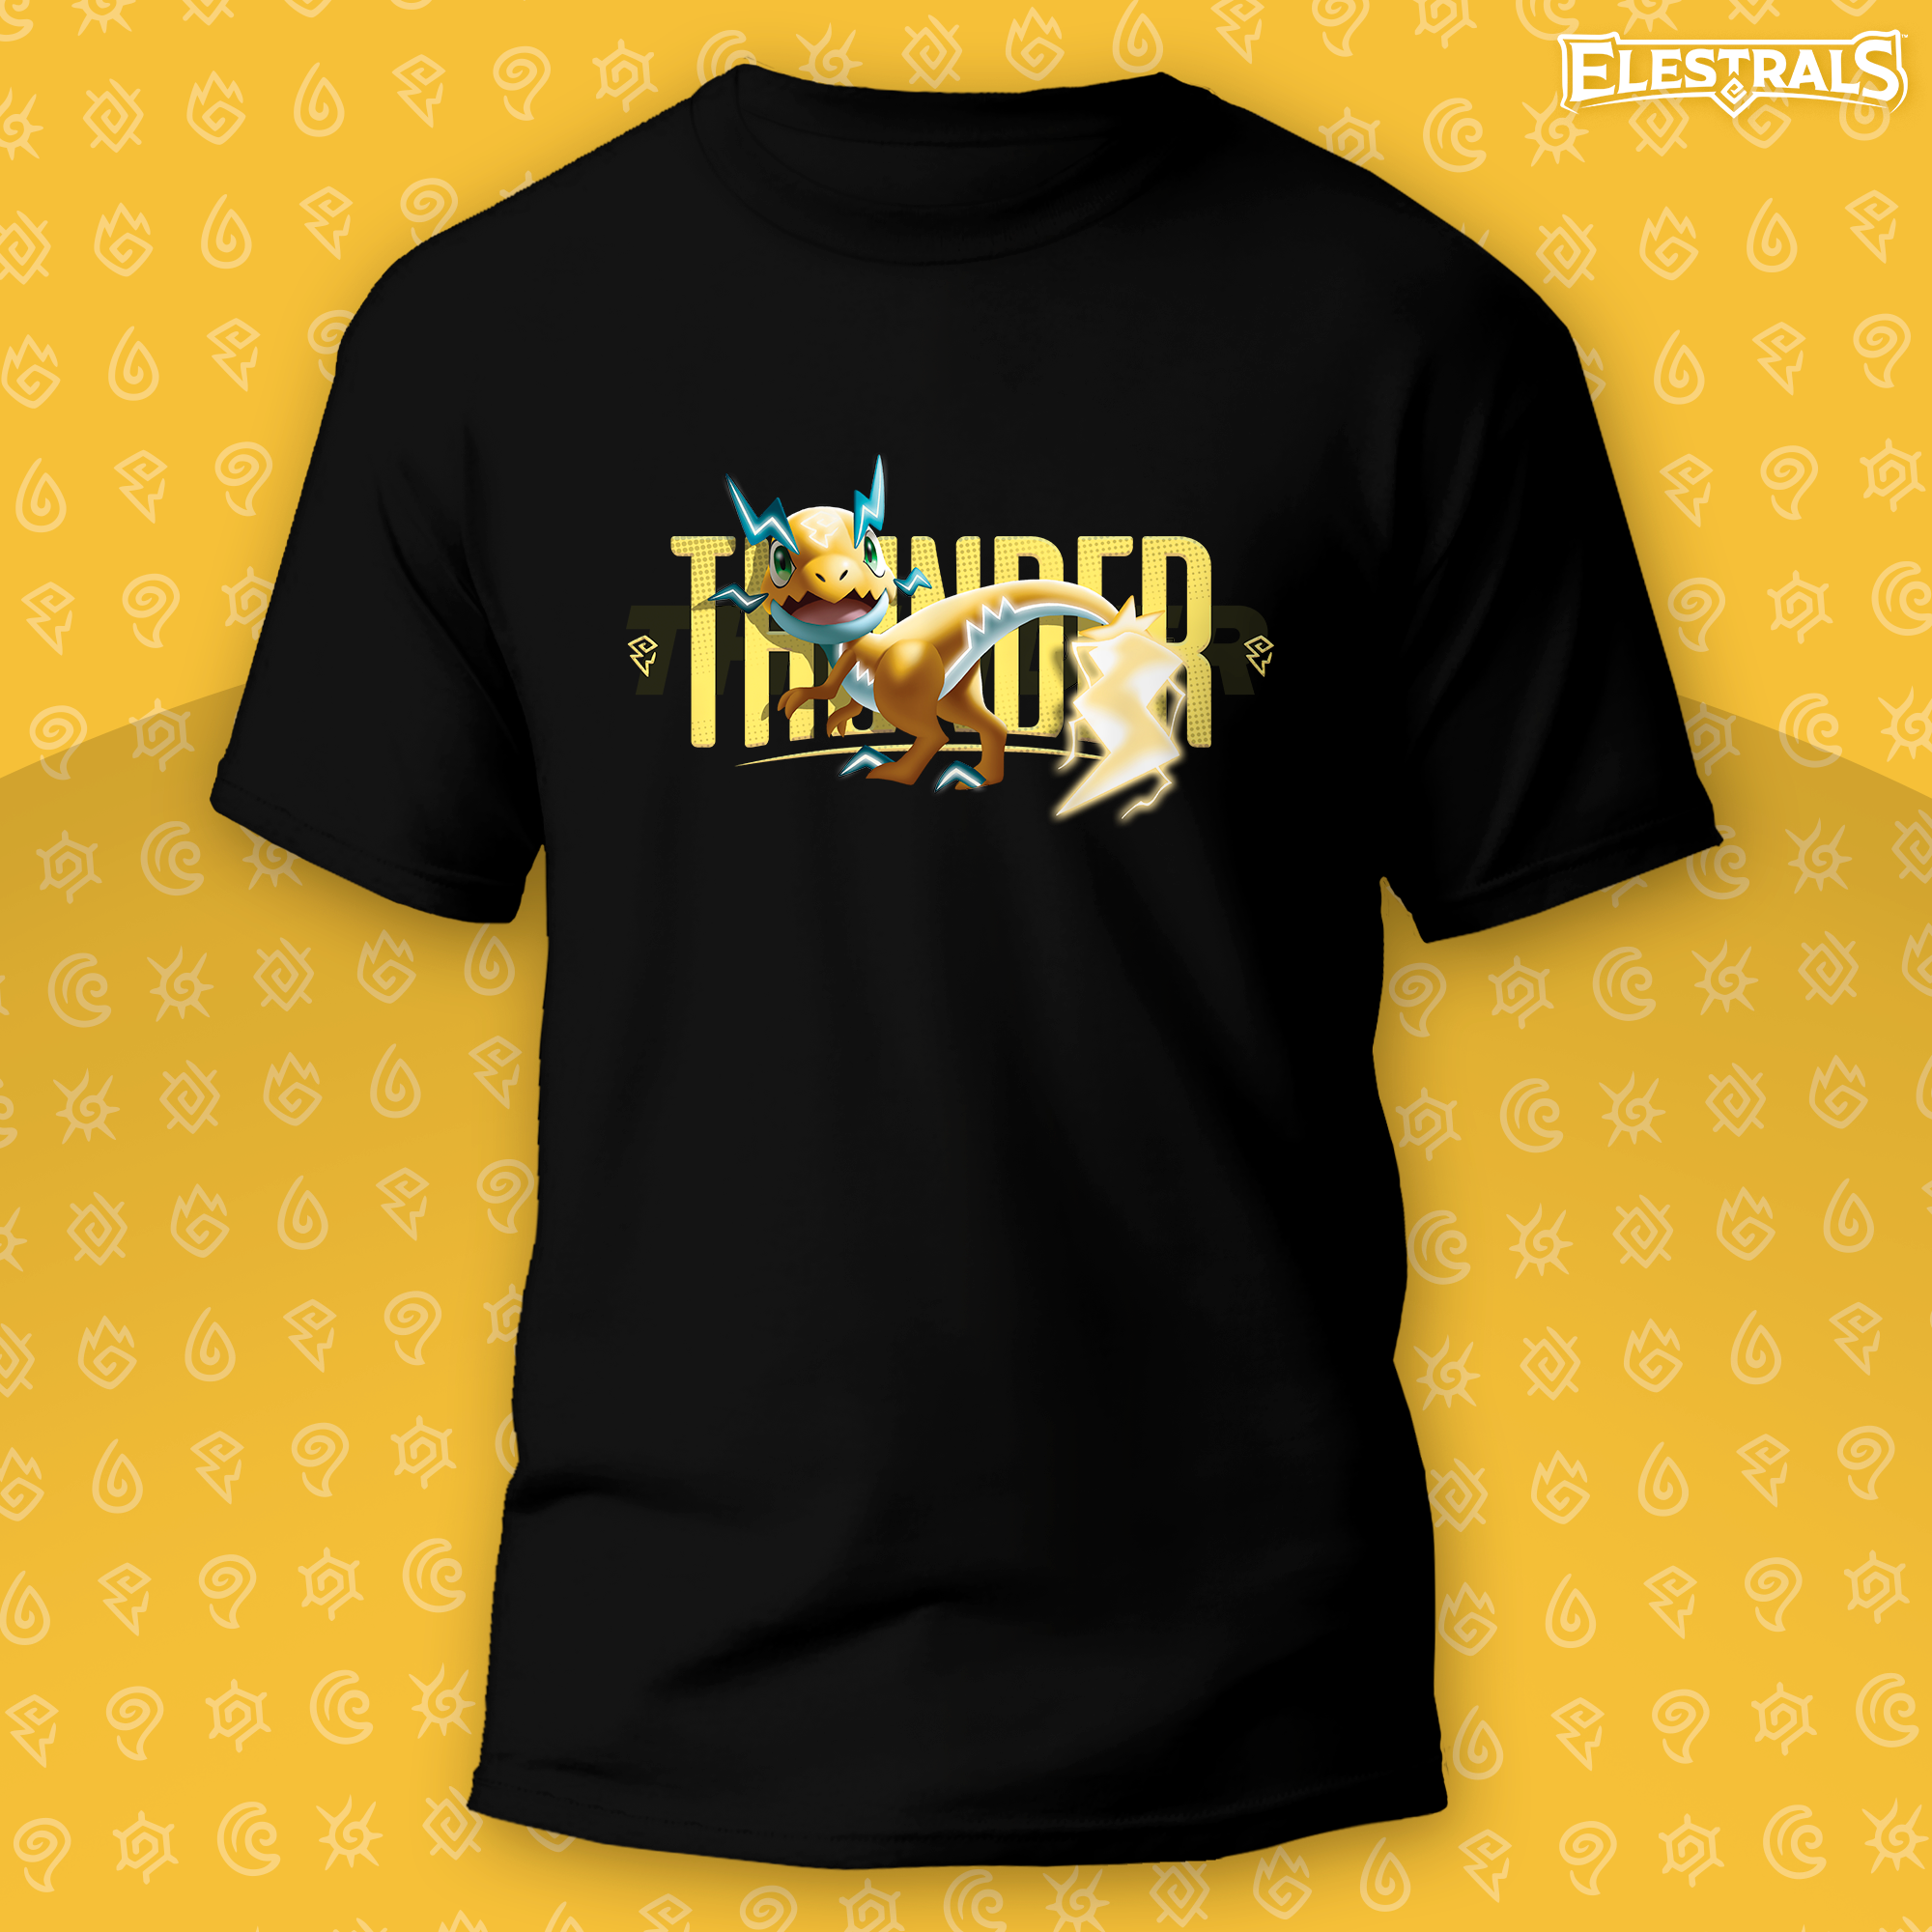 Zaptor Thunder Spirit Graphic T-Shirt - Adult